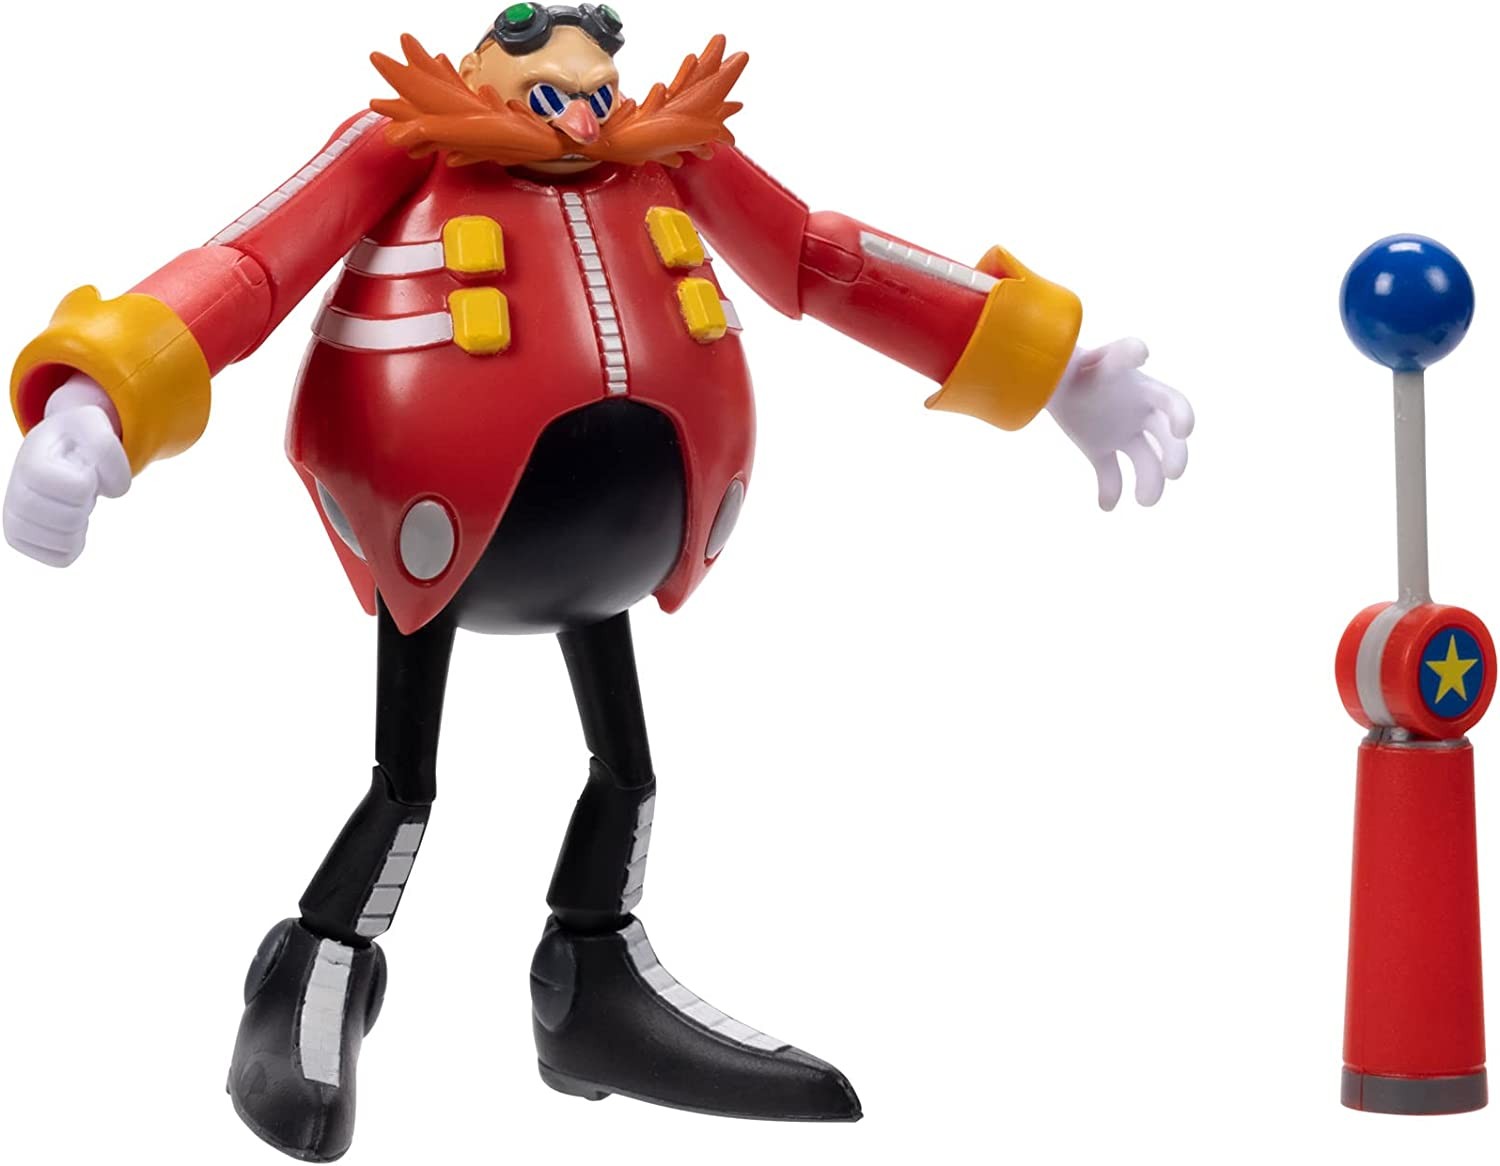 Sonic personaggi assortiti 10 cm e accessori Brand Jakks Peso pr